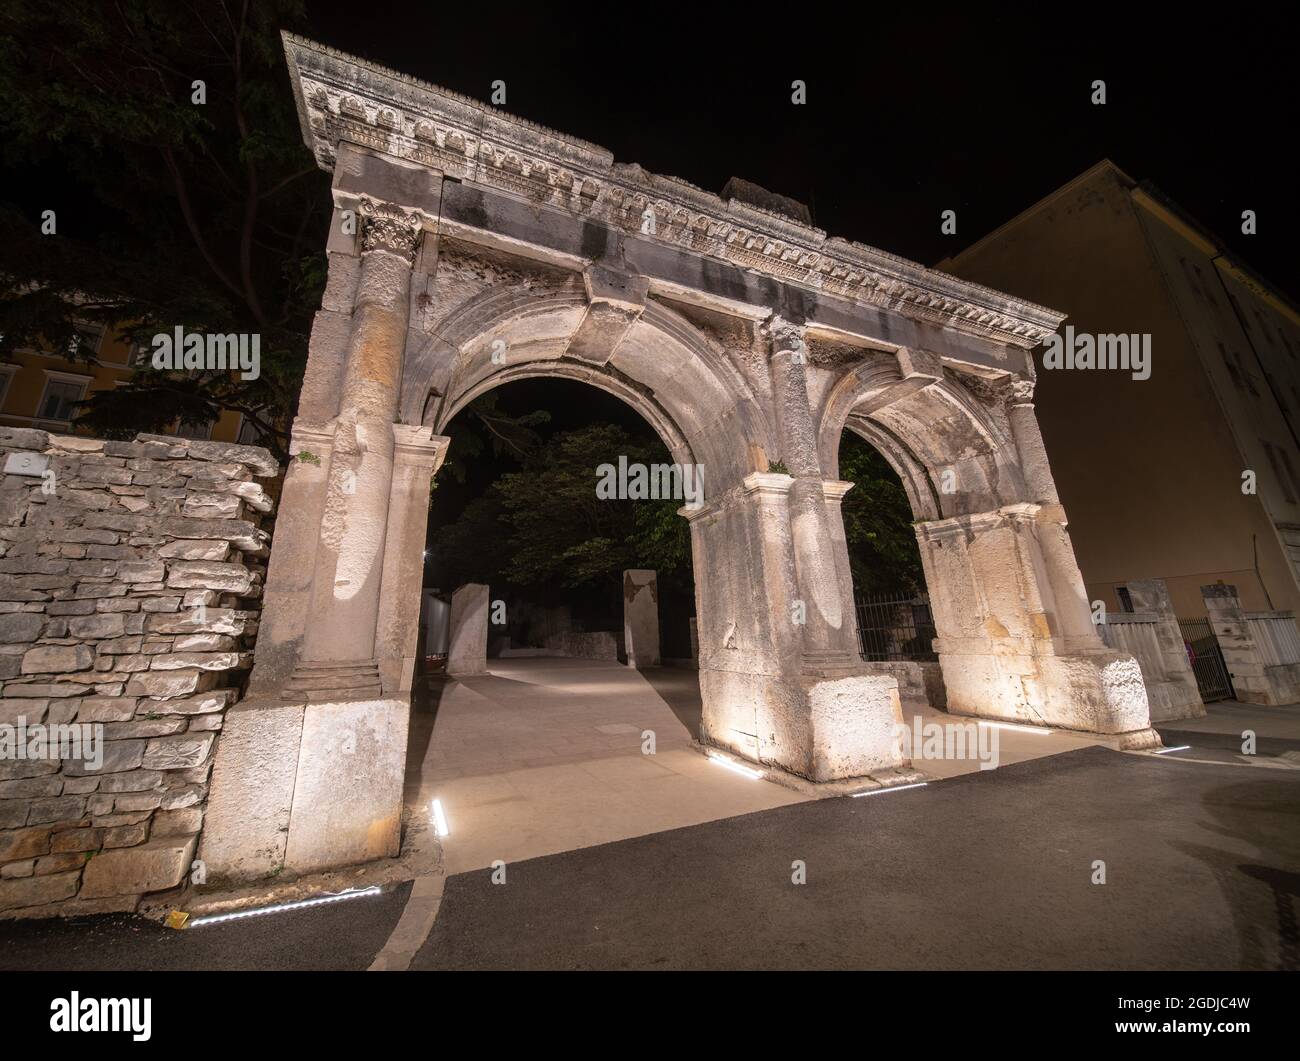 La porta Gemina, una porta romana del II-III secolo nel centro di Pola  (Croazia). Girato di notte Foto stock - Alamy